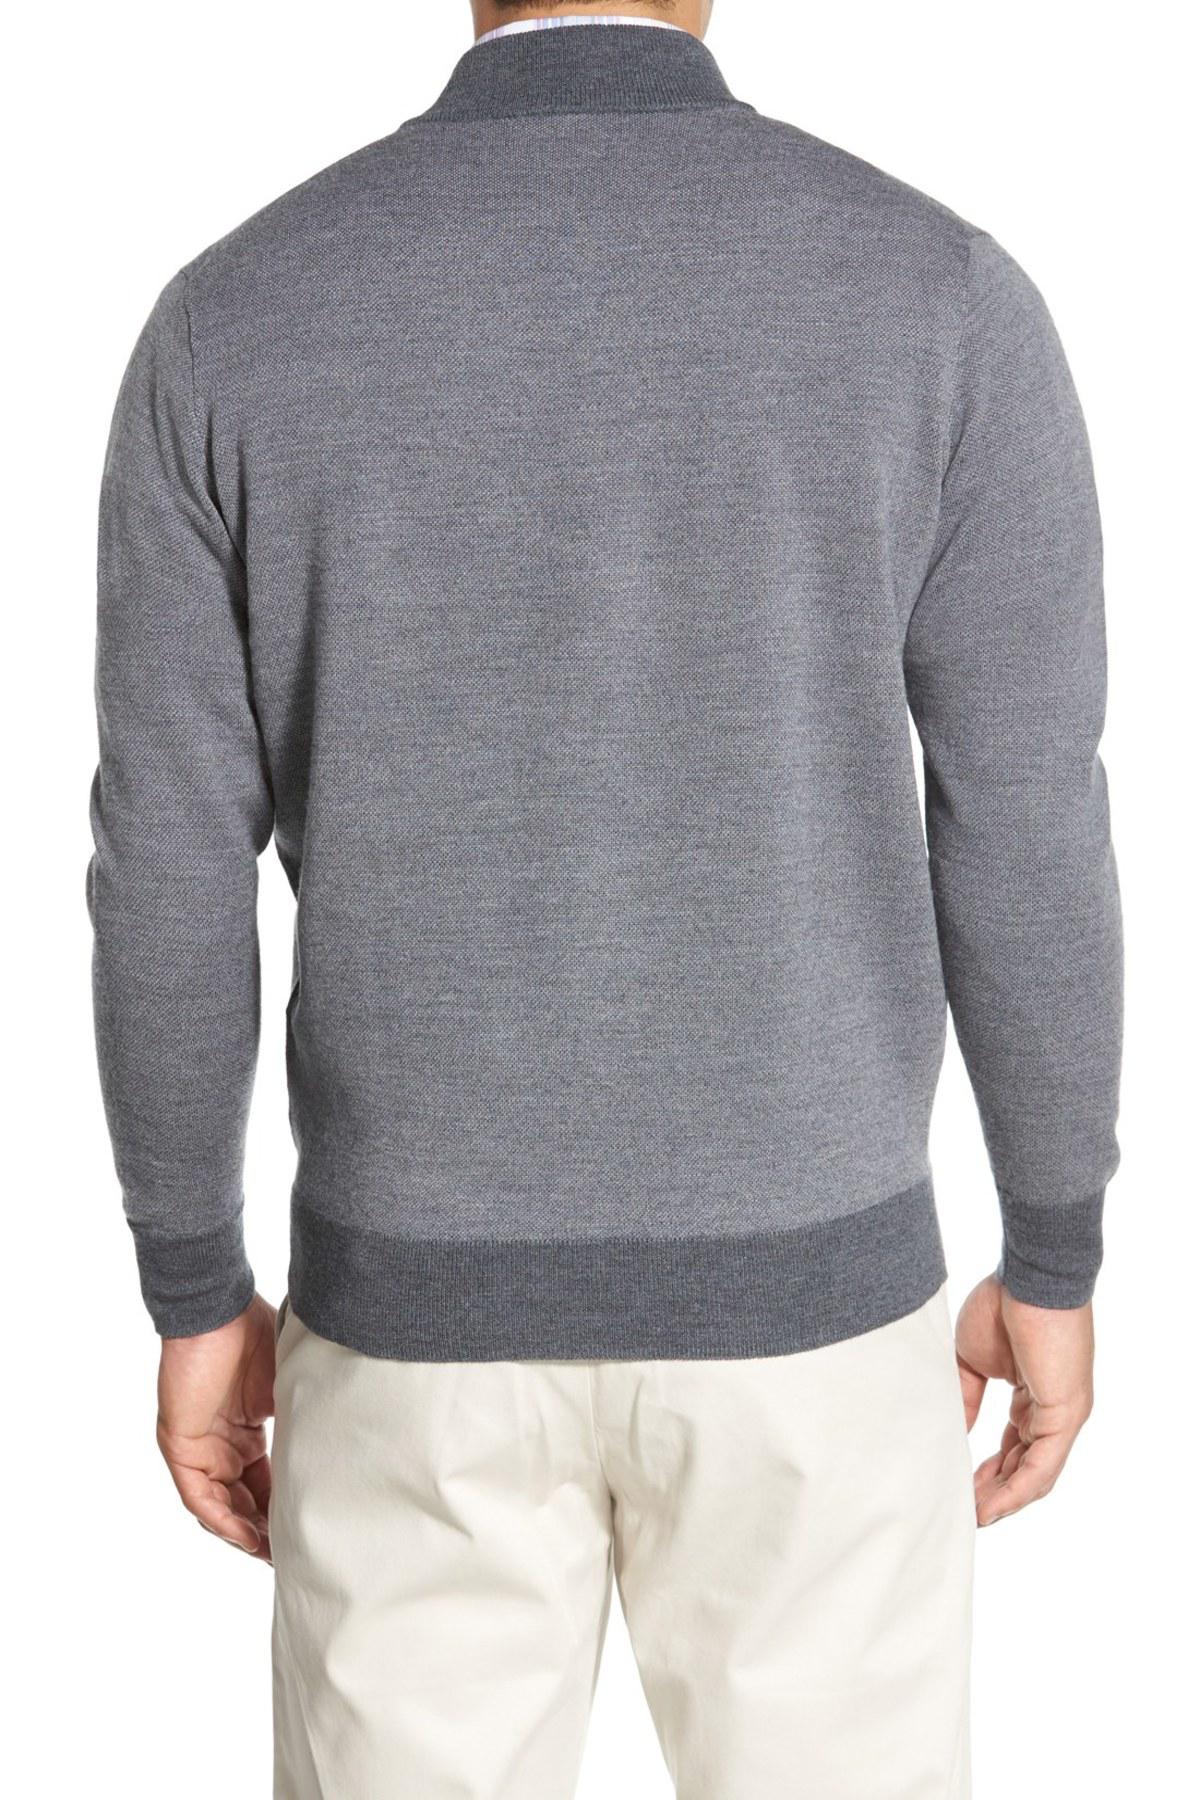 Lyst - Peter Millar Quarter Zip Merino Wool Sweater in Gray for Men